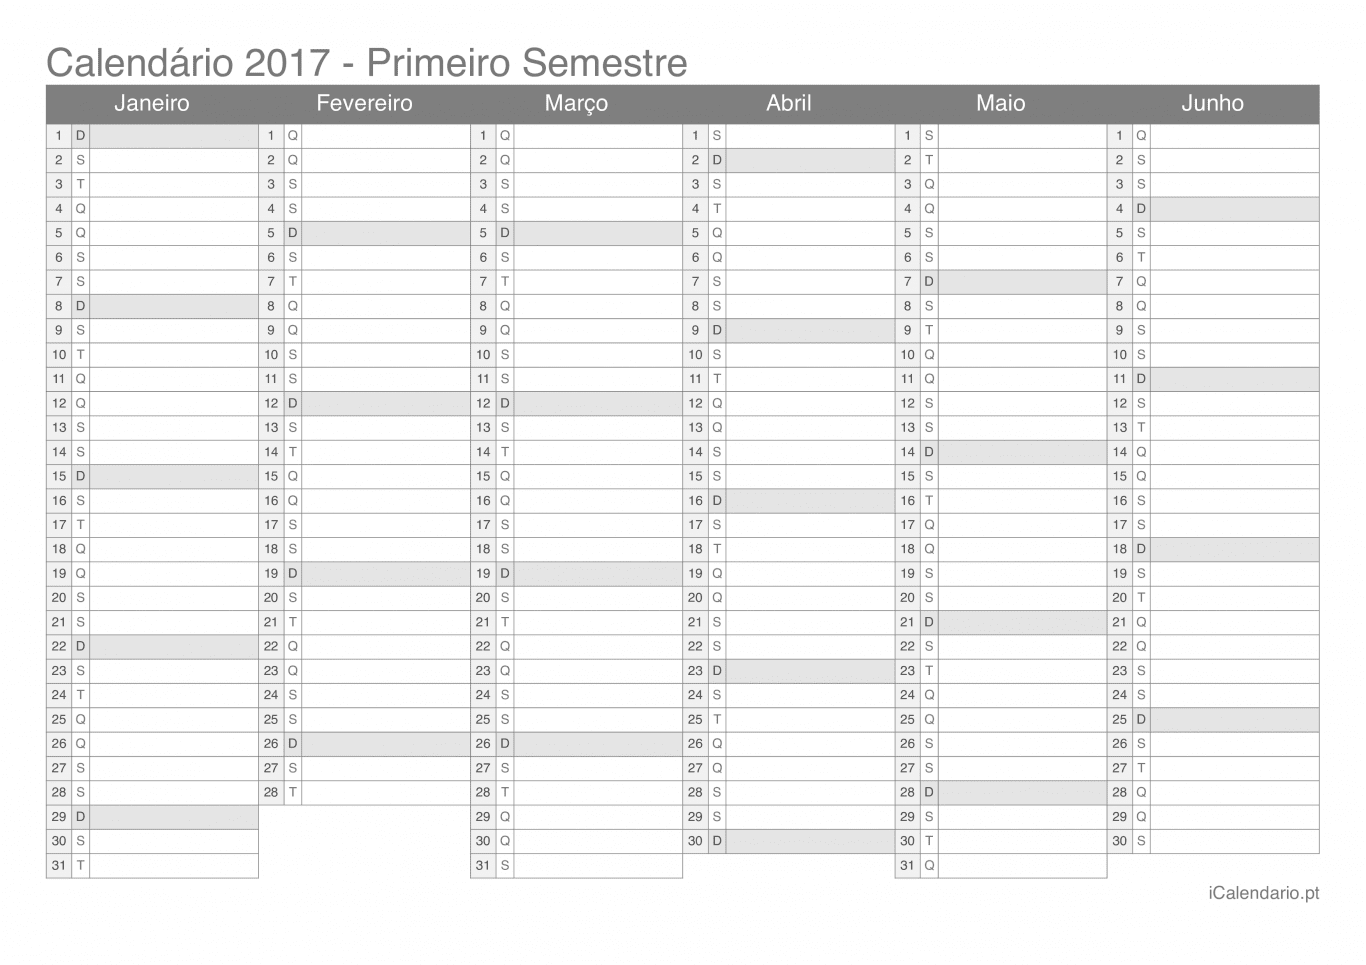 Calendário por semestre 2017